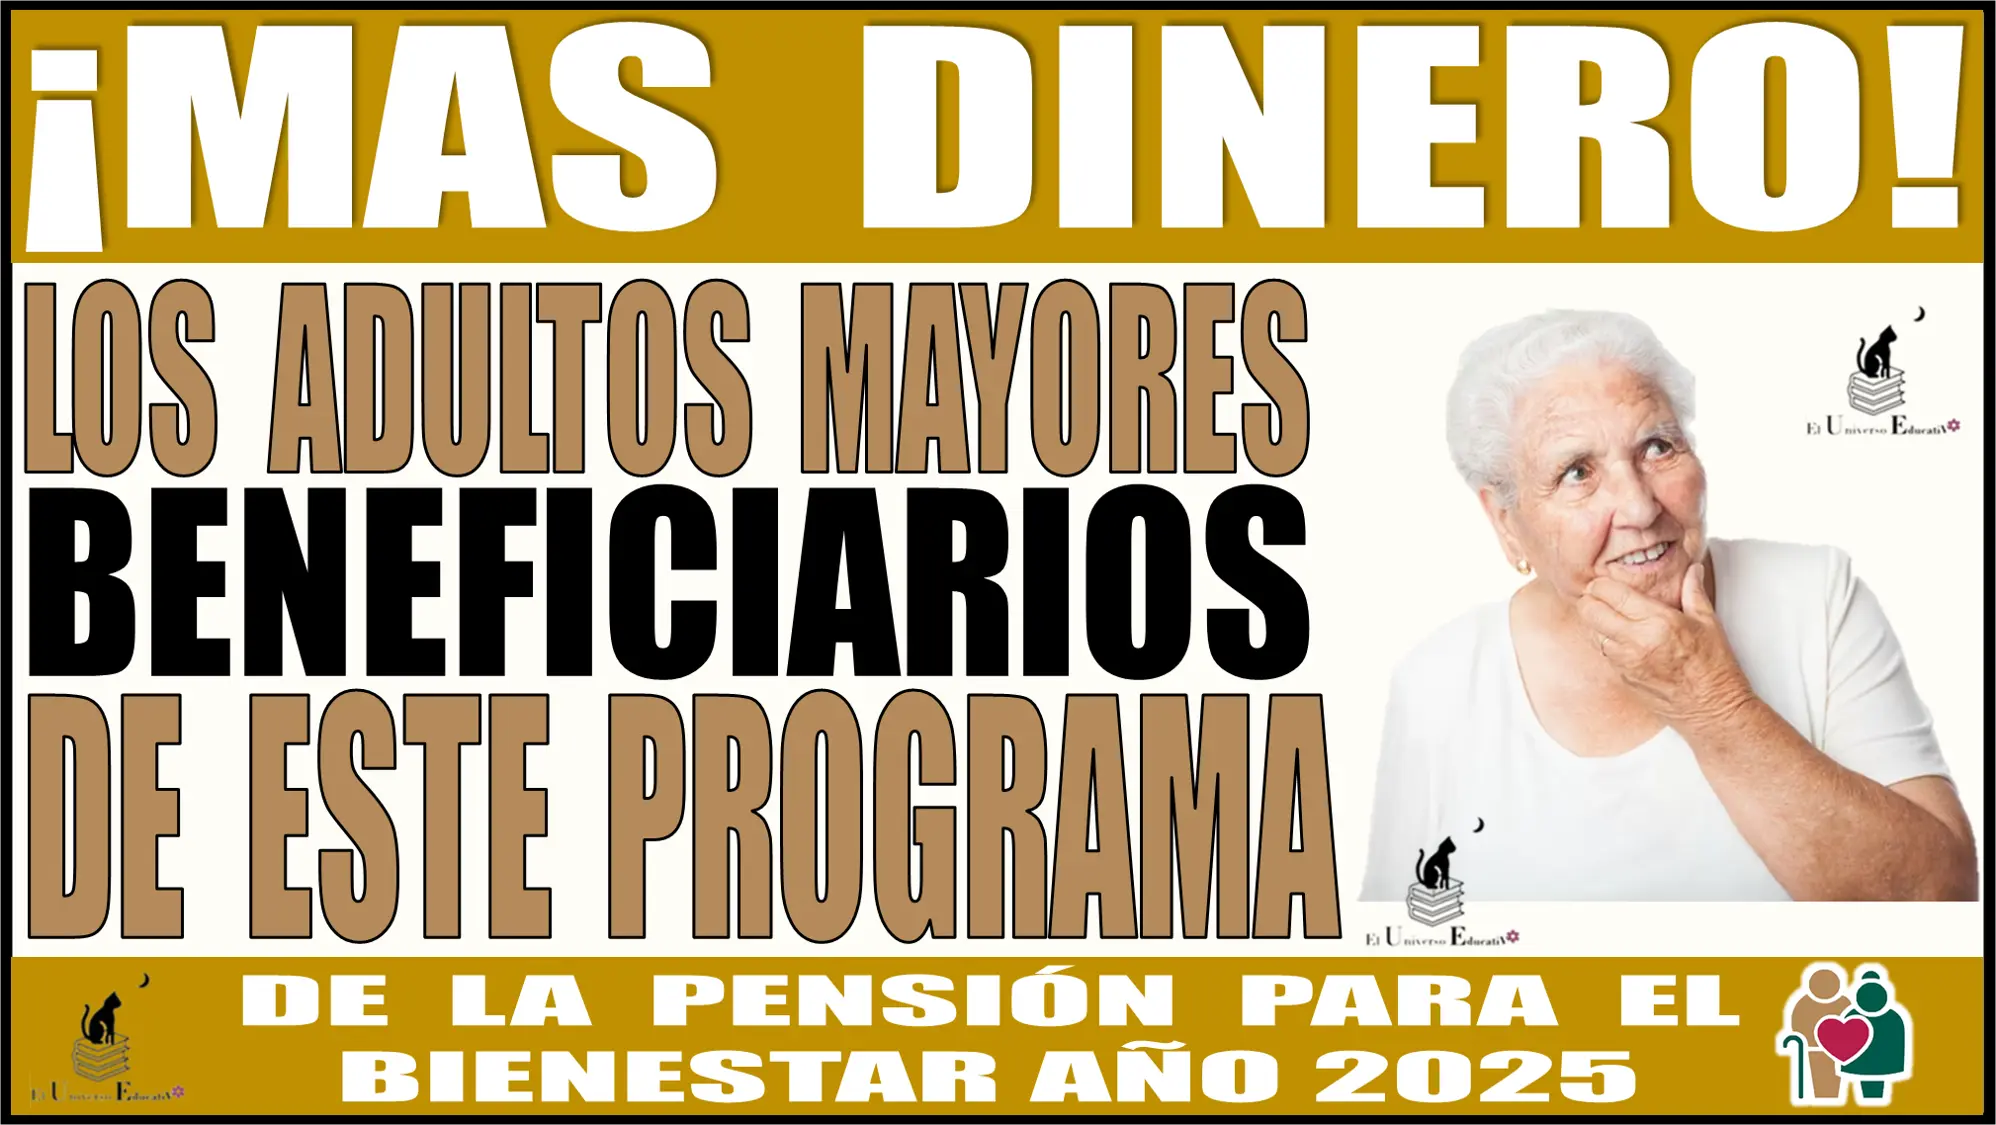 ¡Más dinero para los adultos mayores!, beneficiarios de este programa de la Pensión para el Bienestar del año 2025